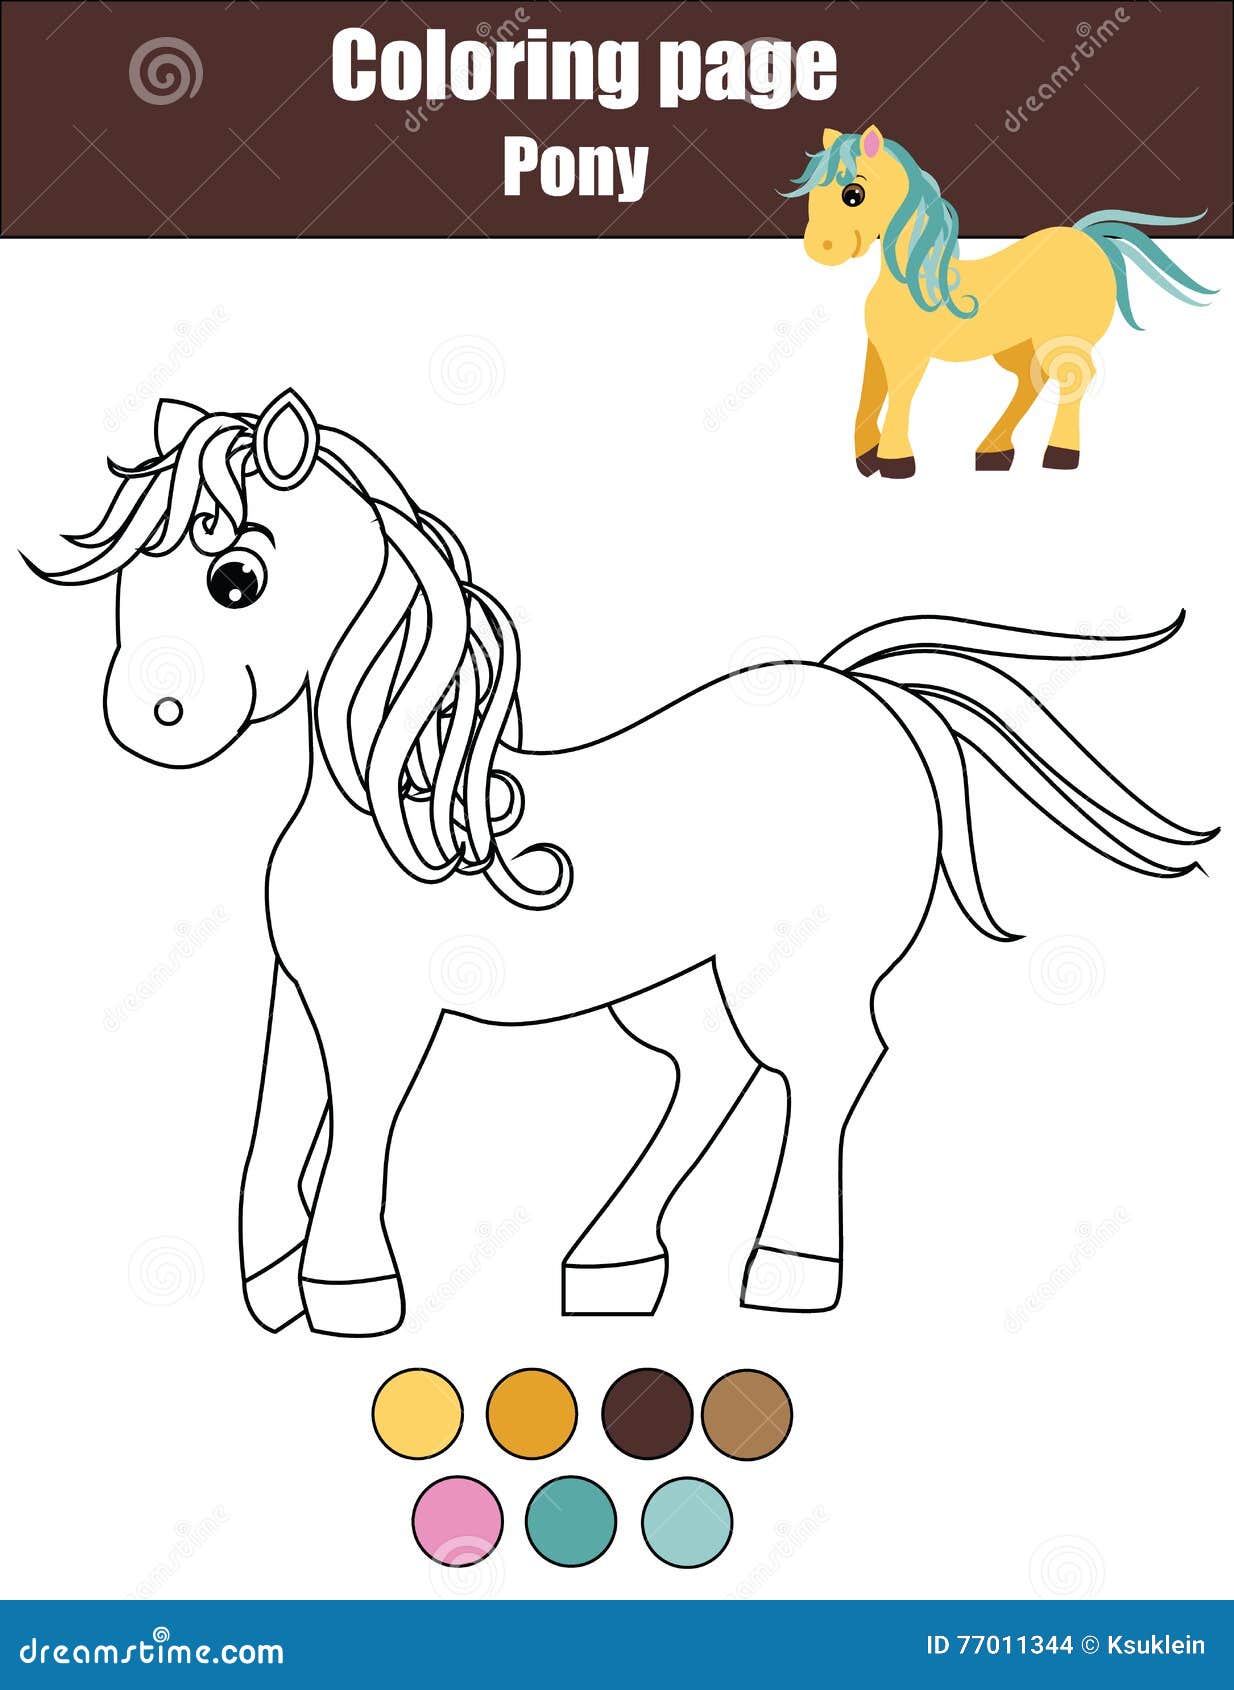 Cavalo : Desenhos para colorir, Jogos gratuitos para crianças